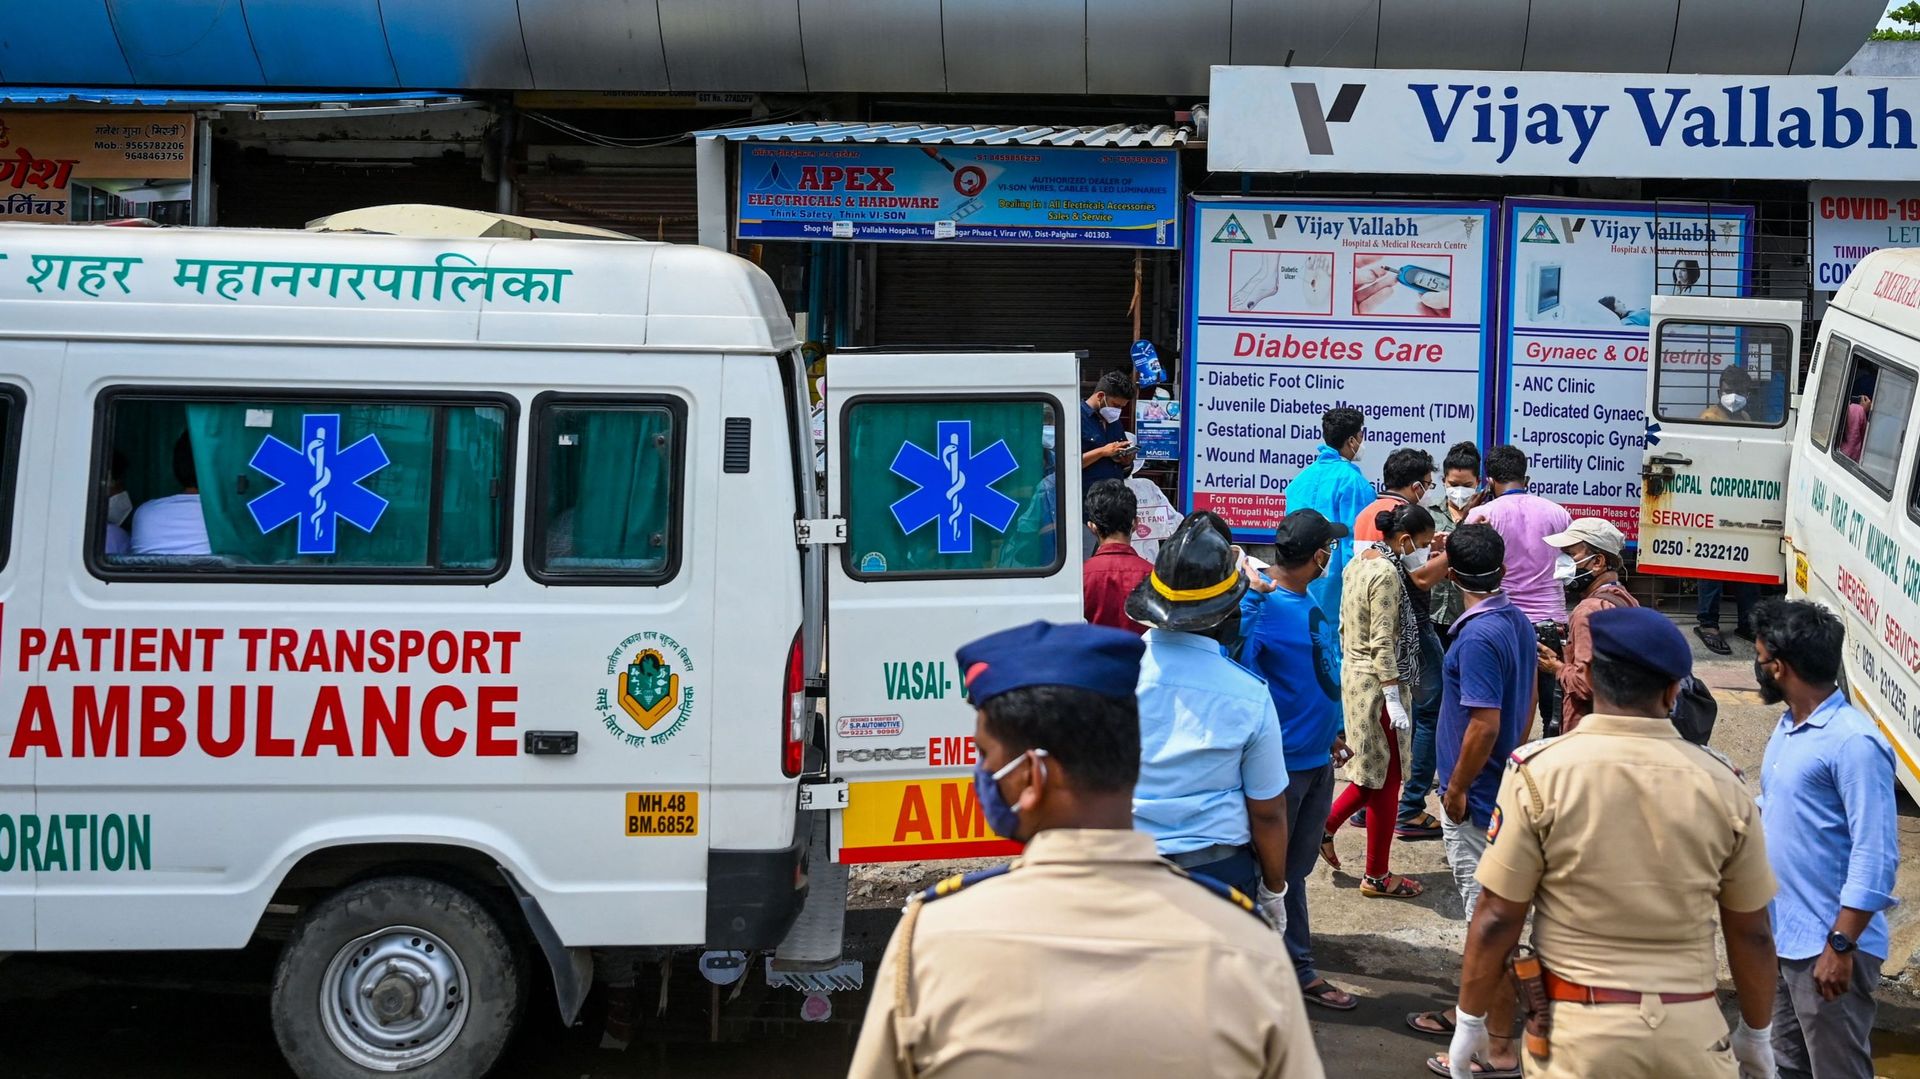 Sur 17 patients aux soins intensifs dans l'hôpital de Vijay Vallabh, 13 sont décédés et quatre autres ont été transférés dans d'autres établissements.